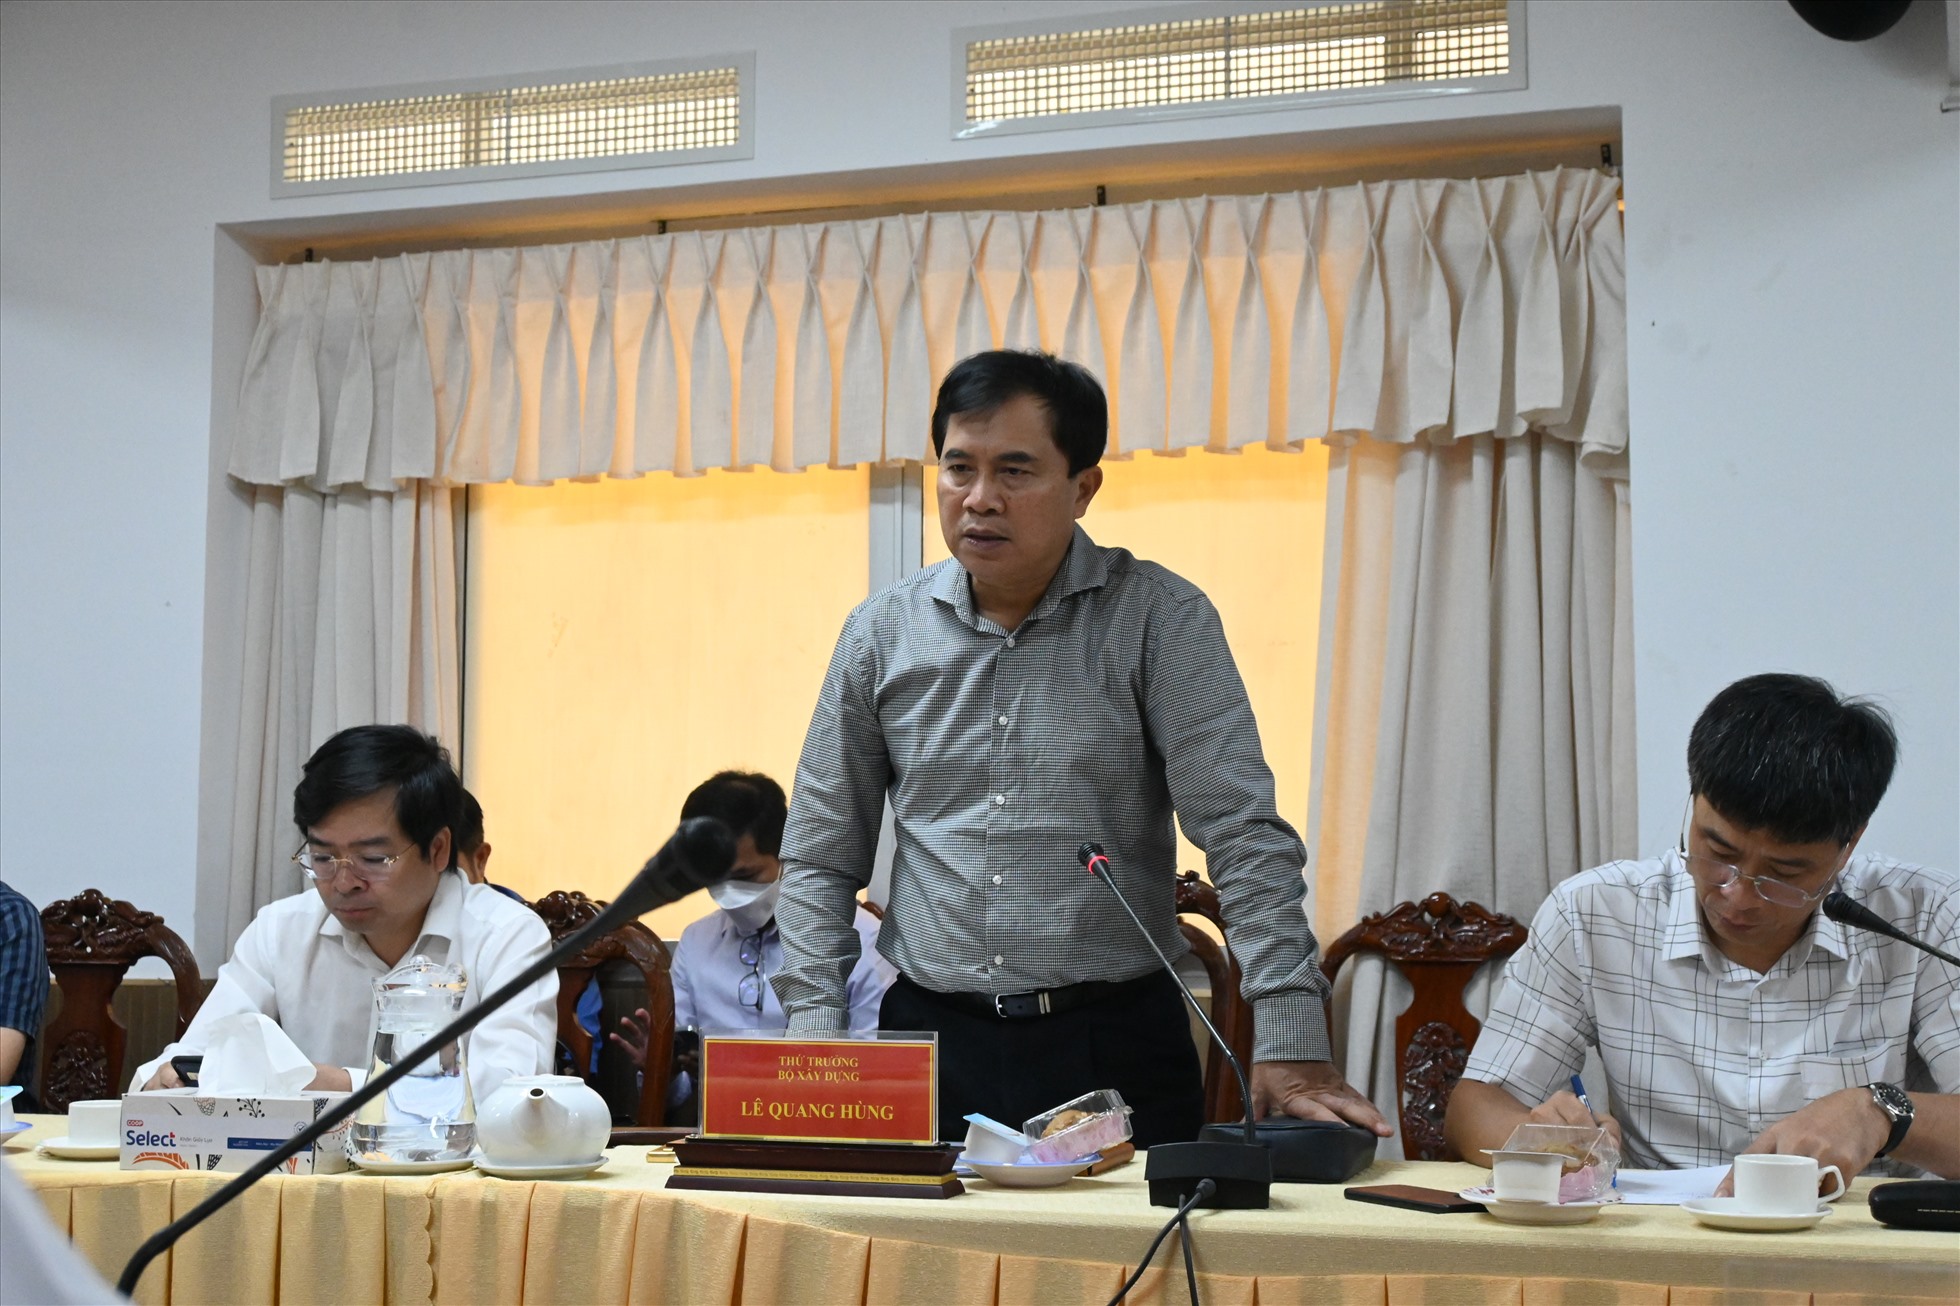 Thứ trưởng Bộ xây dựng Lê Quang Hùng phát biểu tại buổi làm việc với UBND TP.cần Thơ về dự án thành phần 2 thuộc dự án cao tốc Châu Đốc - Cần Thơ - Sóc Trăng. Ảnh: Th.N